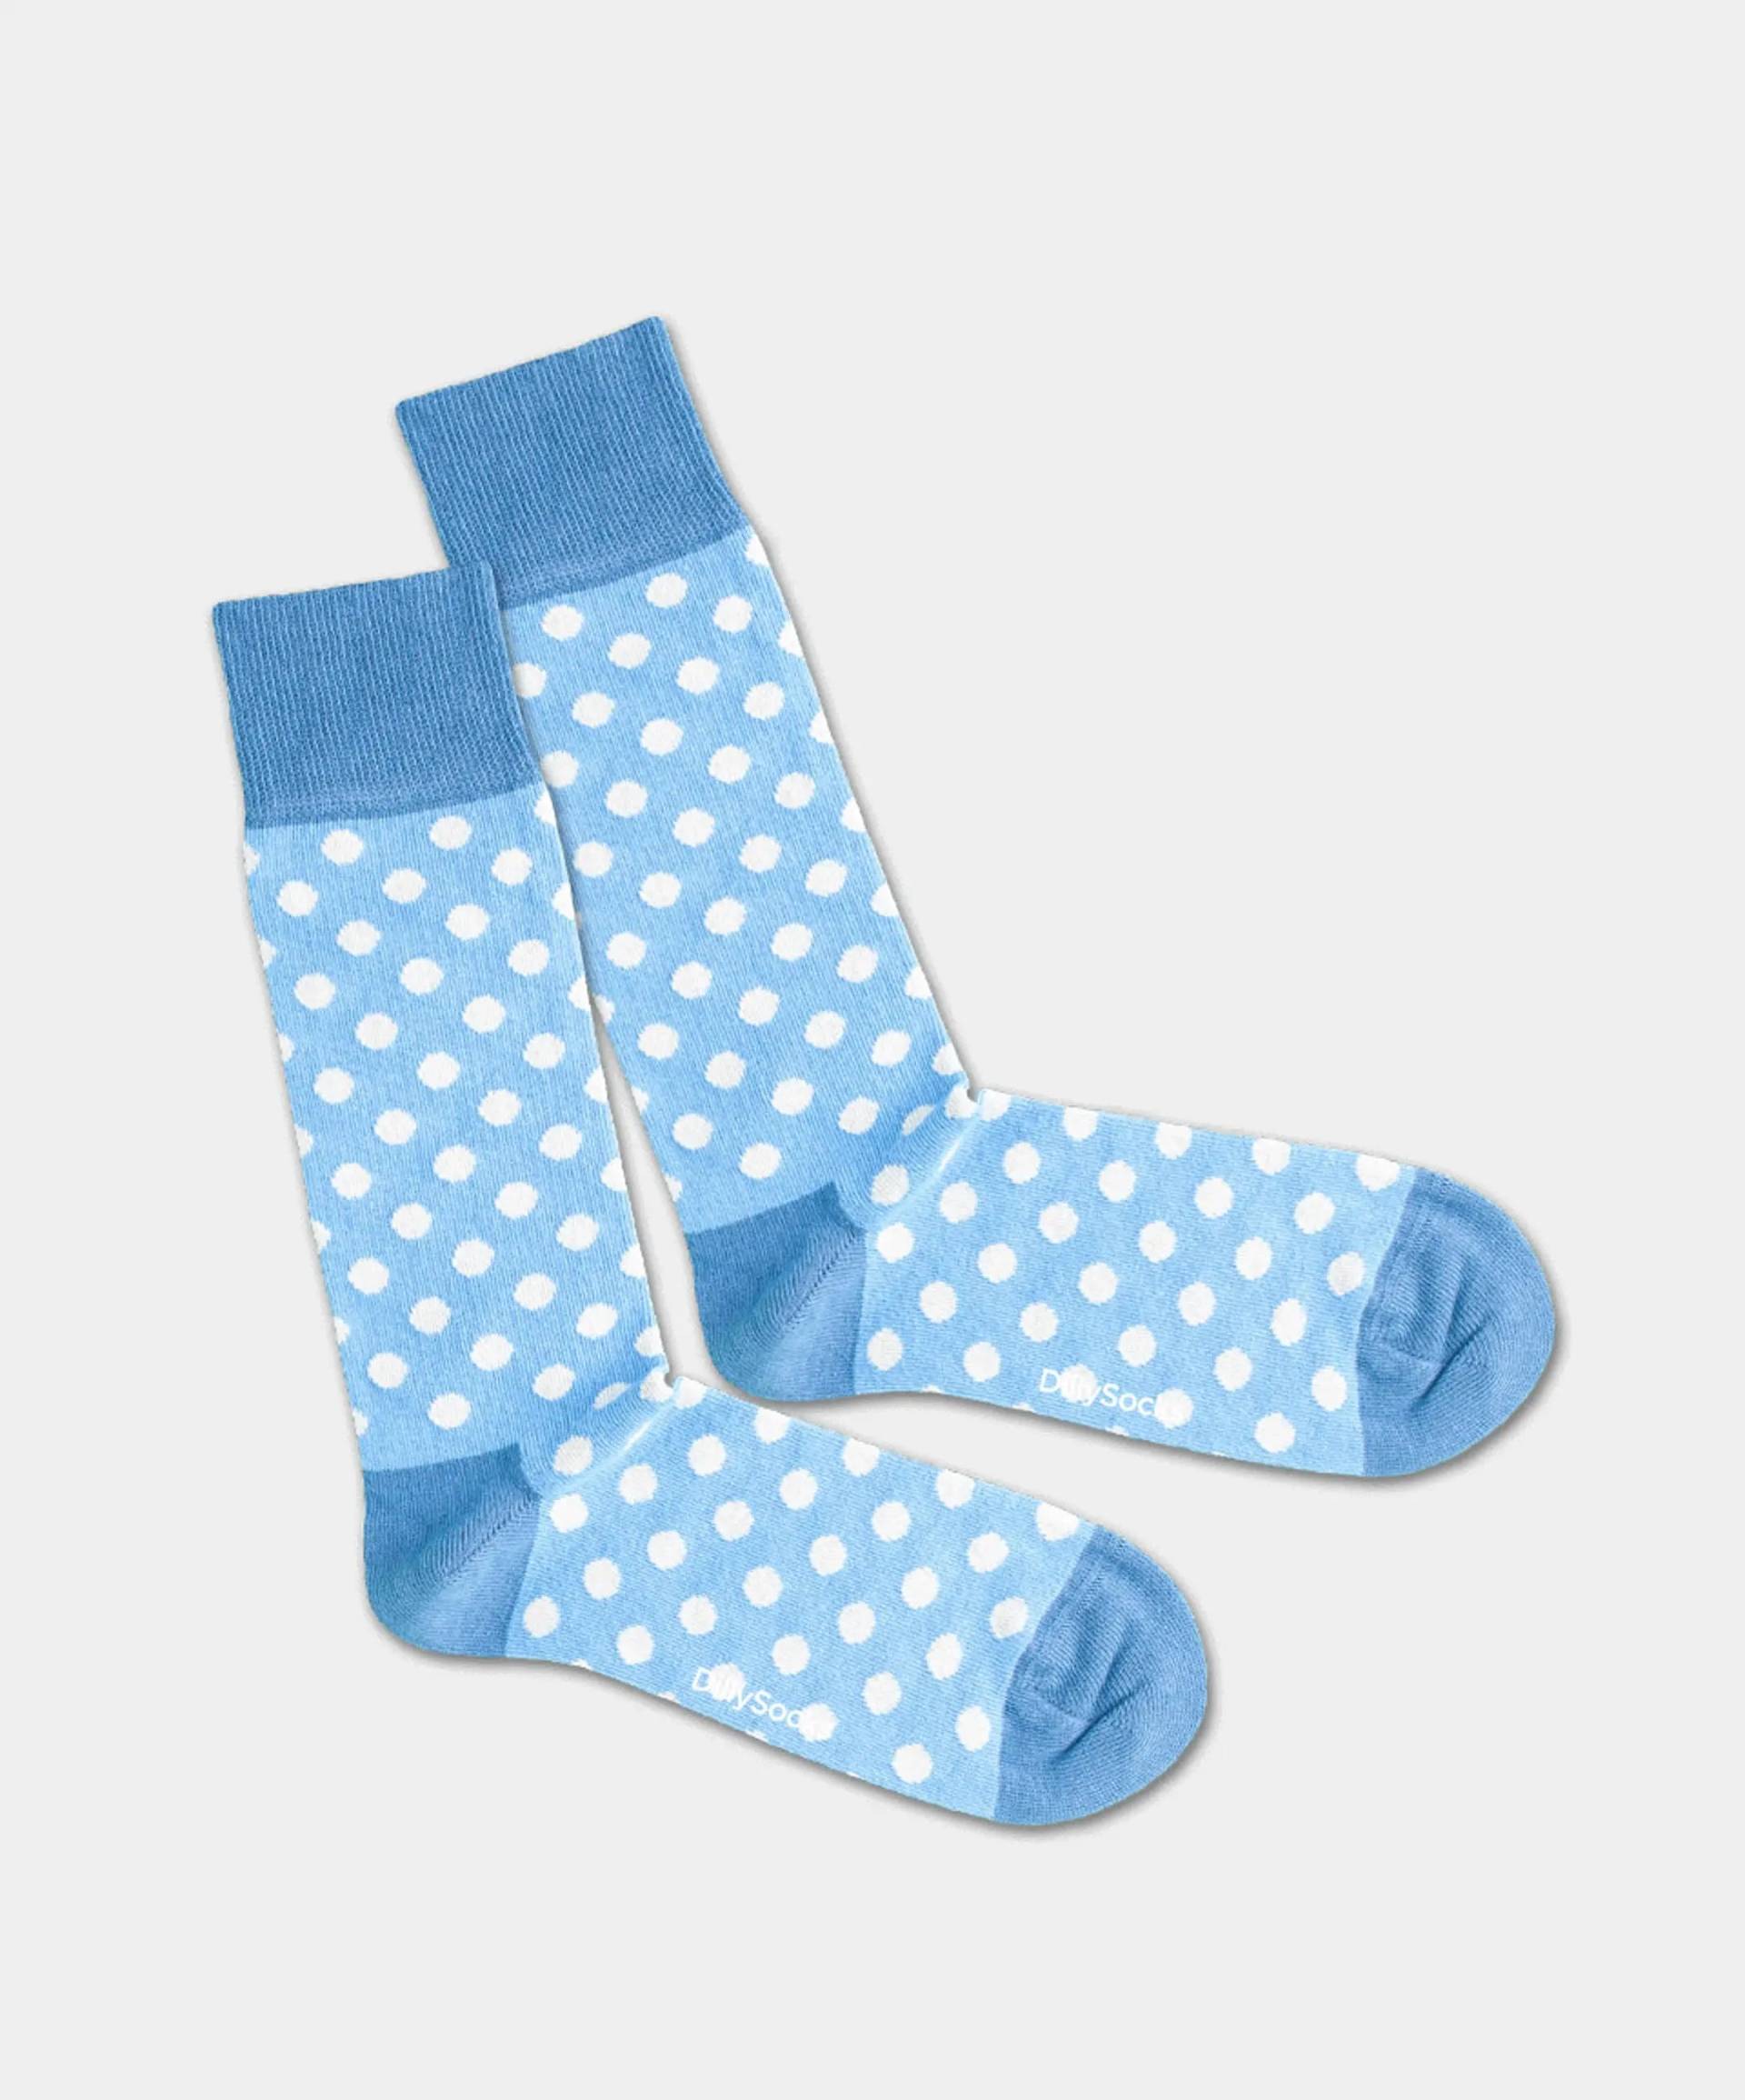 - Socken in Blau mit Punkte Motiv/Muster von DillySocks